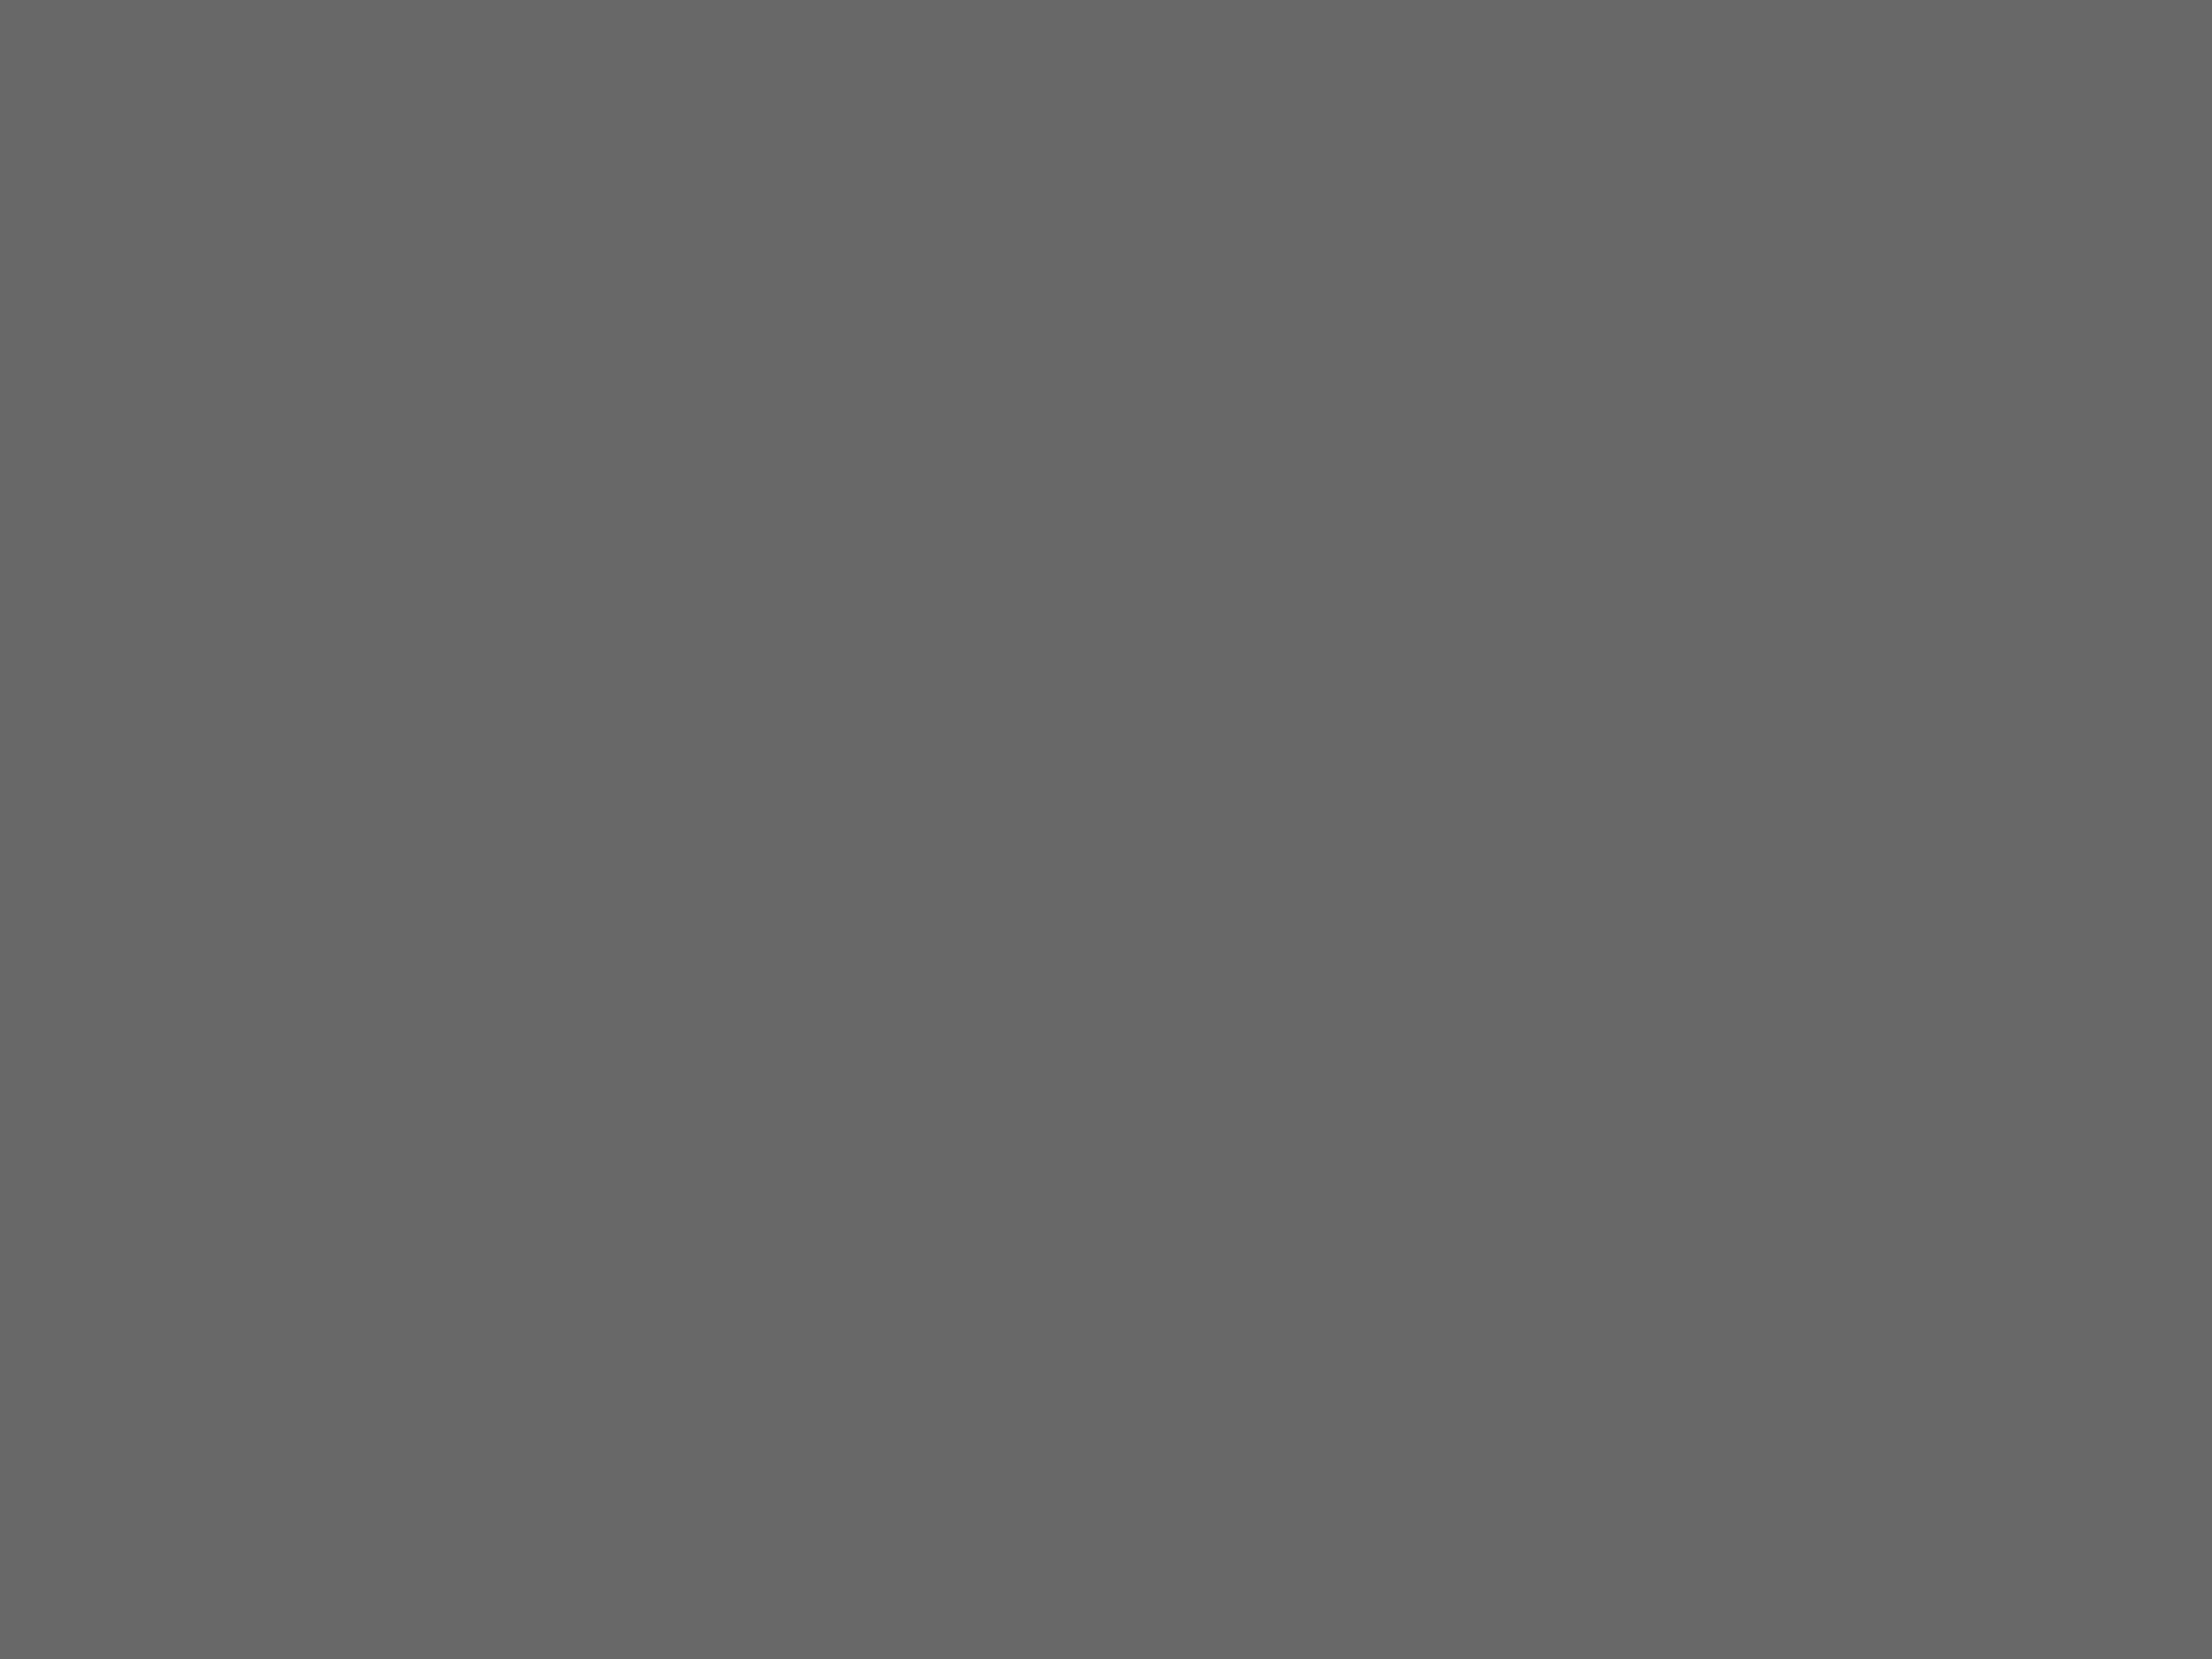 Владислав Стржельчик перед спектаклем. Ленинград, 1979 год. Фотография: Максим Блохин / Фотохроника ТАСС